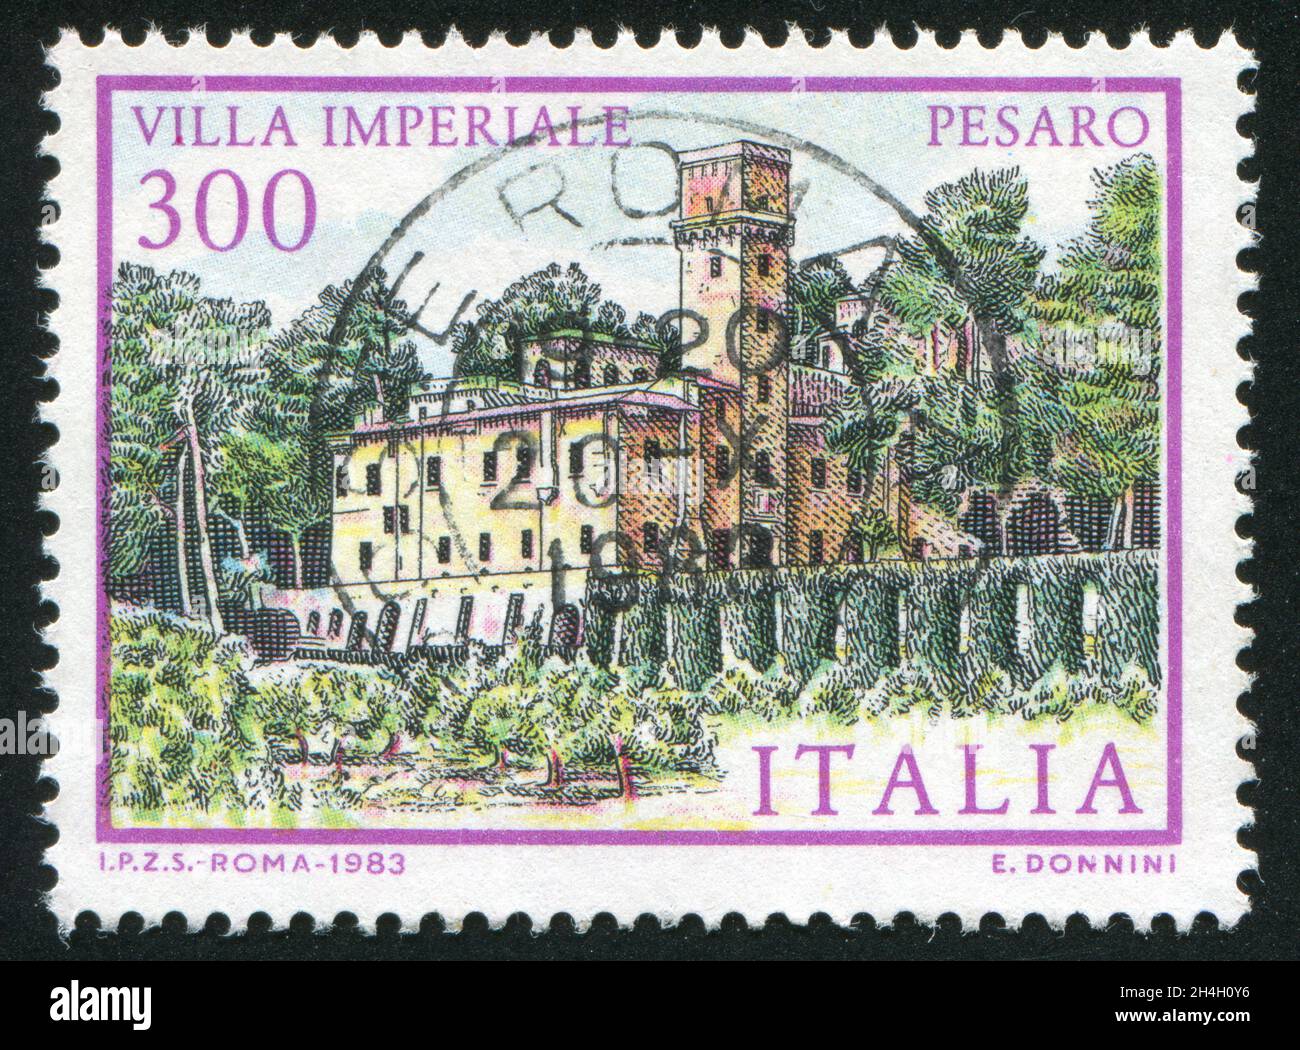 ITALIEN - UM 1983: Briefmarke gedruckt von Italien, zeigt Villa Imperiale in Pesaro, um 1983 Stockfoto